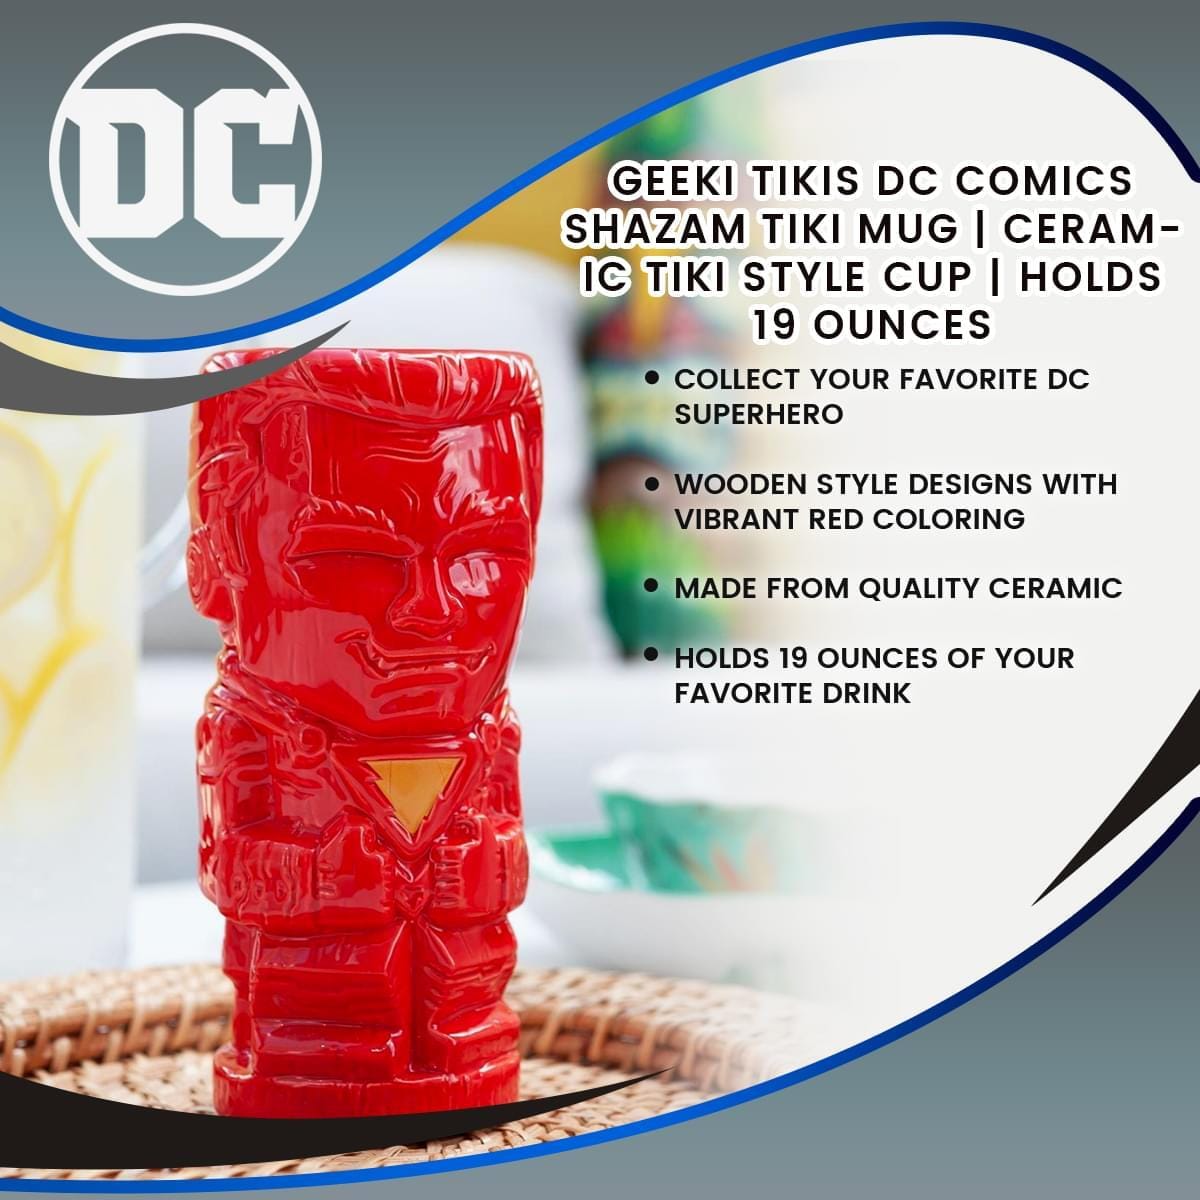 Geeki Tikis DC Comics Shazam Tiki Mug | Ceramic Tiki Style Cup | Holds 19 Ounces